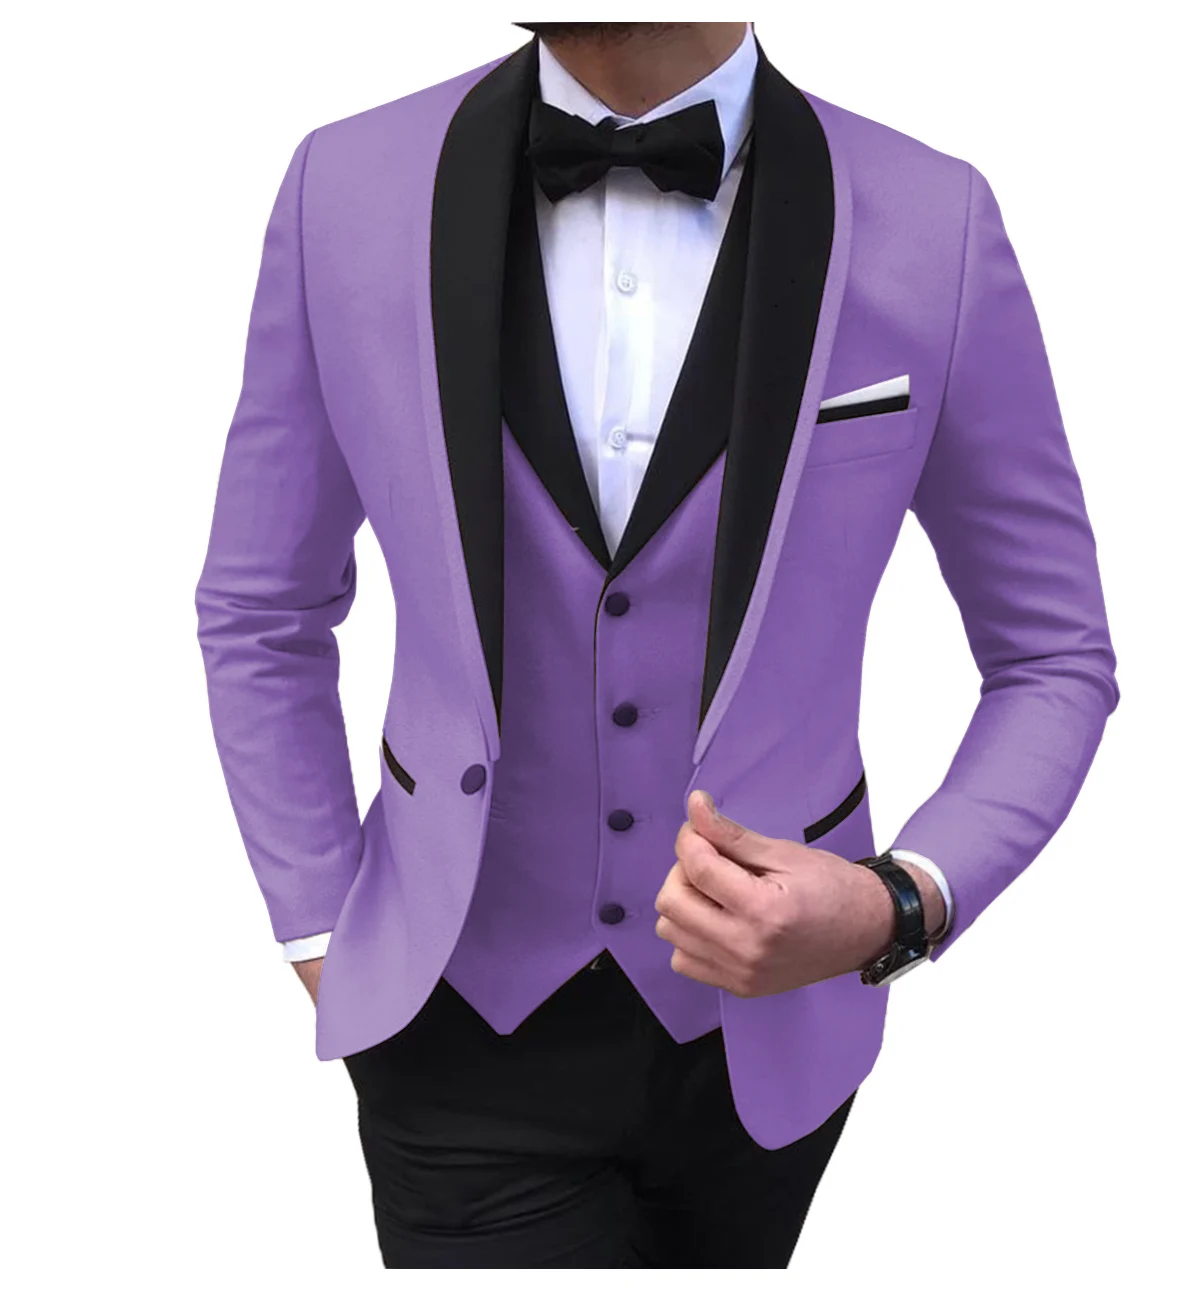 Blue Slit Mens Suits 3 Piece Black Shawl Lapel Casual Tuxedos for Wedding Groomsmen Suits Men 2020 (blazer+vest+pants) images - 6